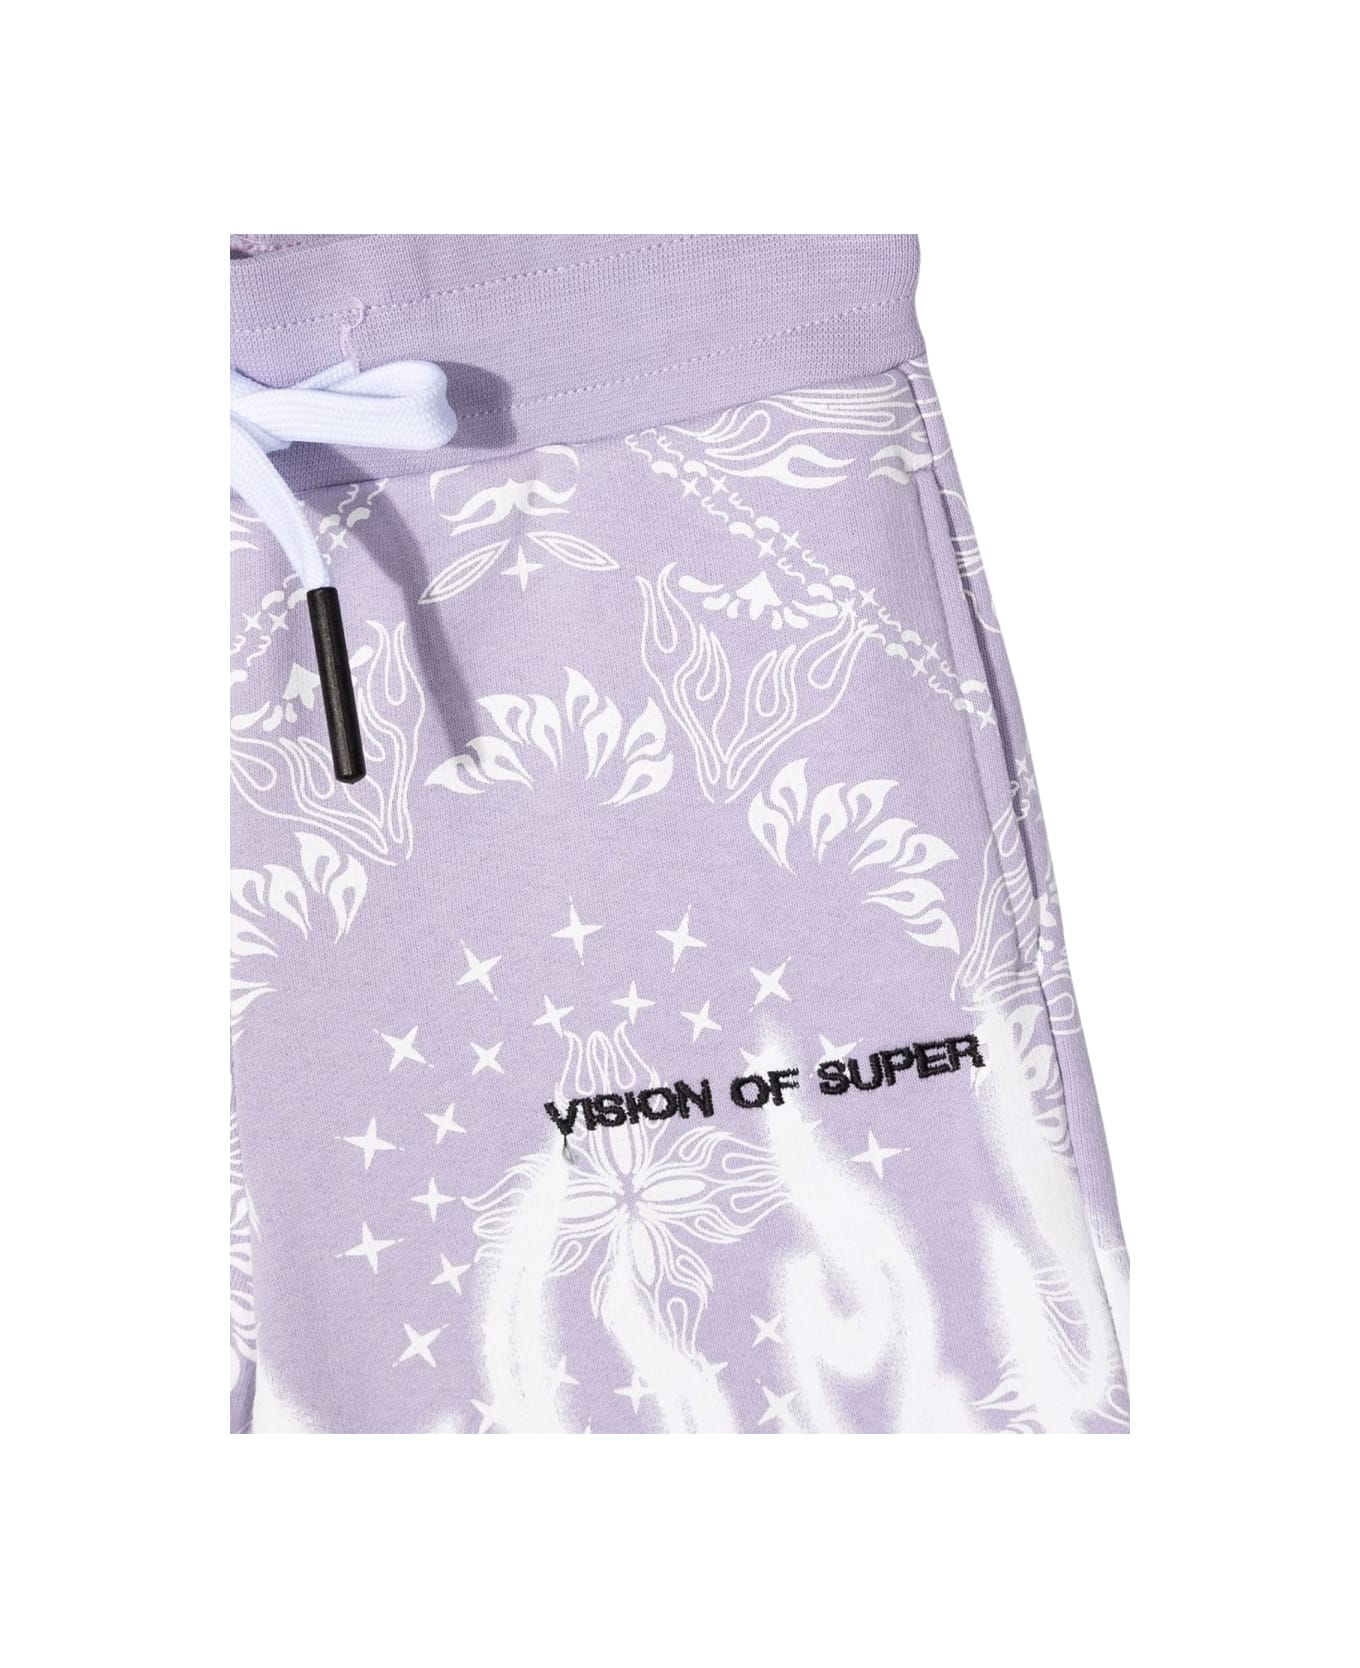 Vision of Super Lilac Shorts Kids With Bandana Print - LILAC ボトムス